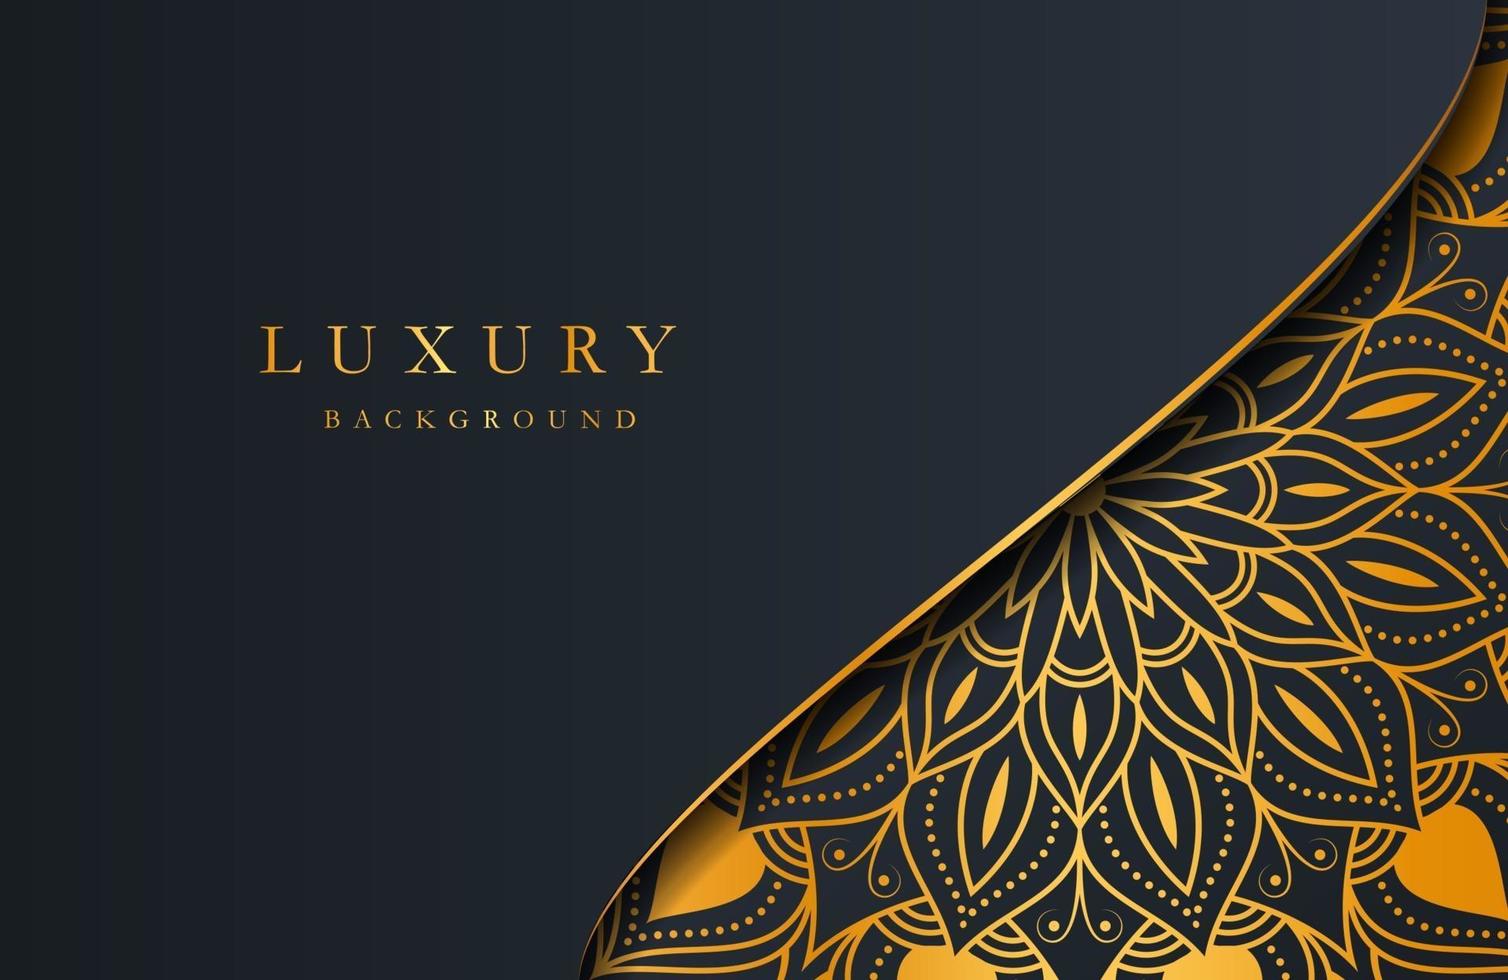 luxe gouden mandala sierlijke achtergrond voor bruiloft uitnodiging, boekomslag. arabesque islamitische achtergrond vector